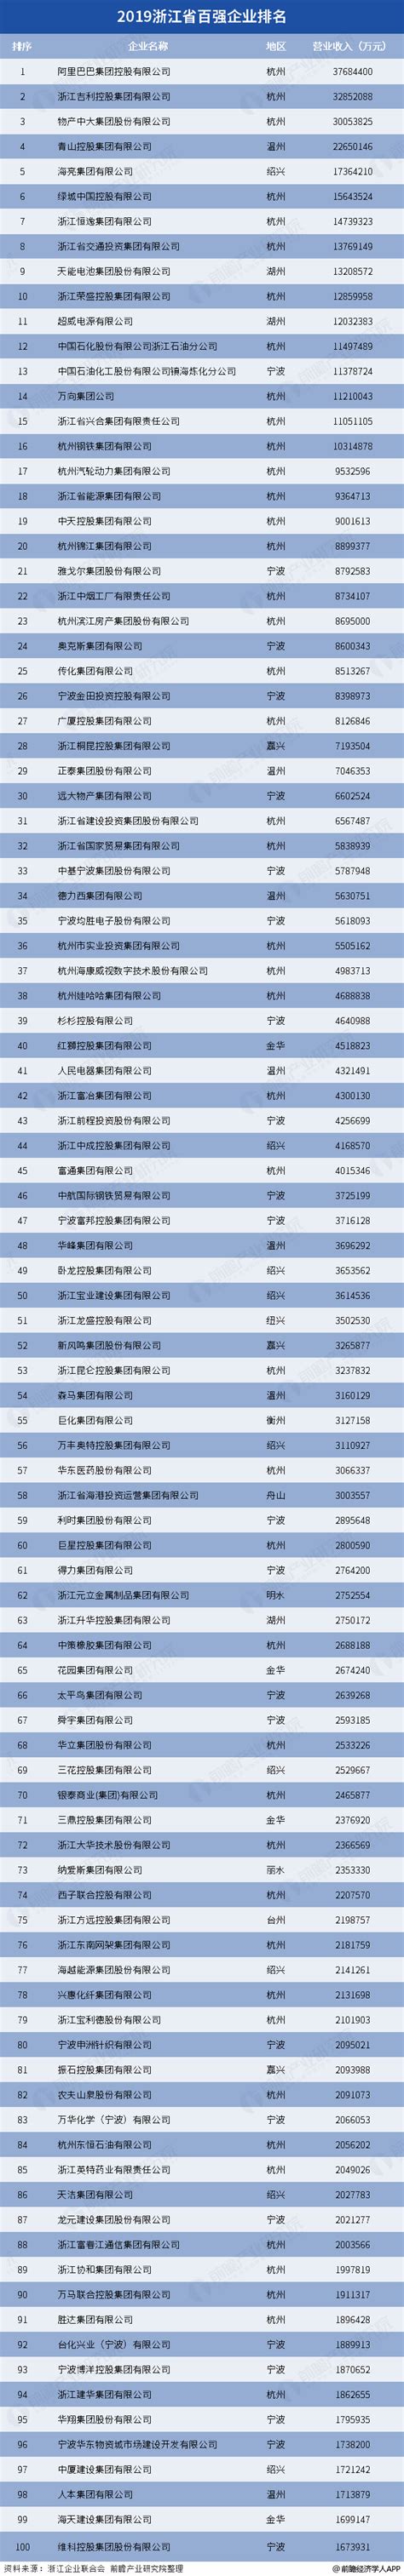 浙江省100强企业名单排名